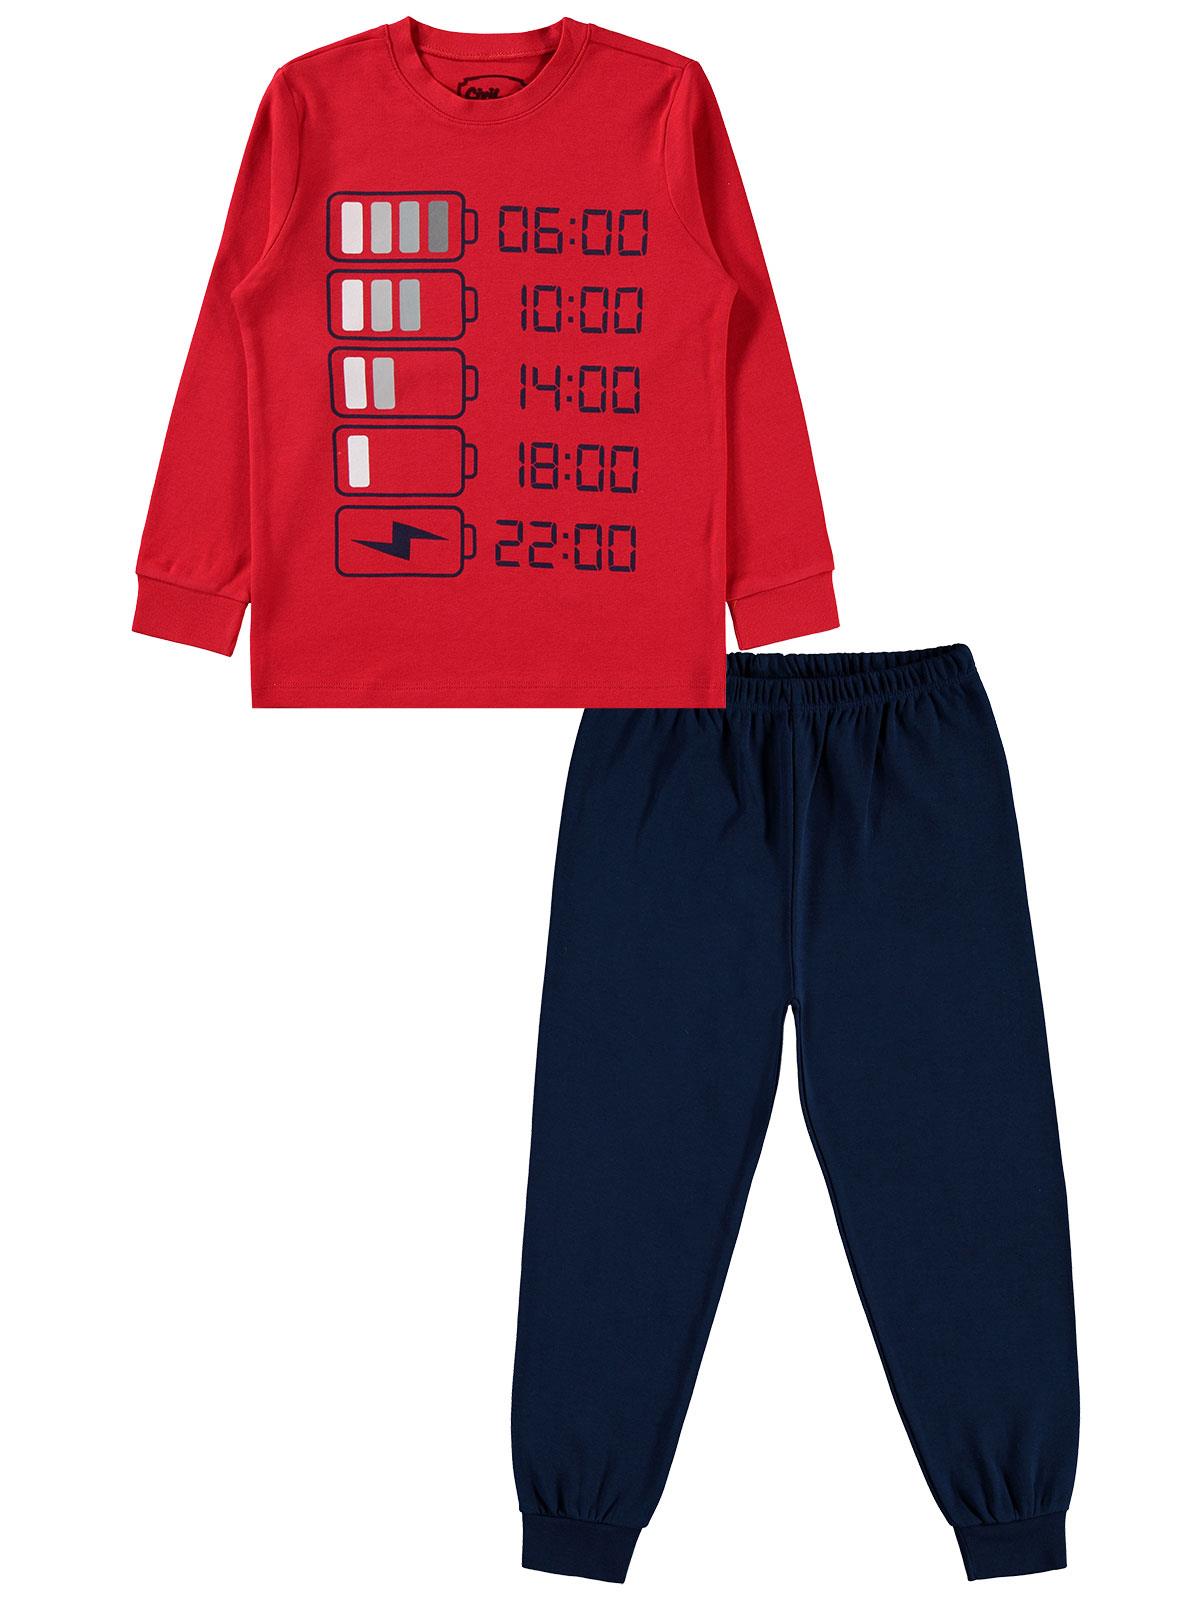 Civil Boys Erkek Çocuk Pijama Takımı 6-9 Yaş Kırmızı